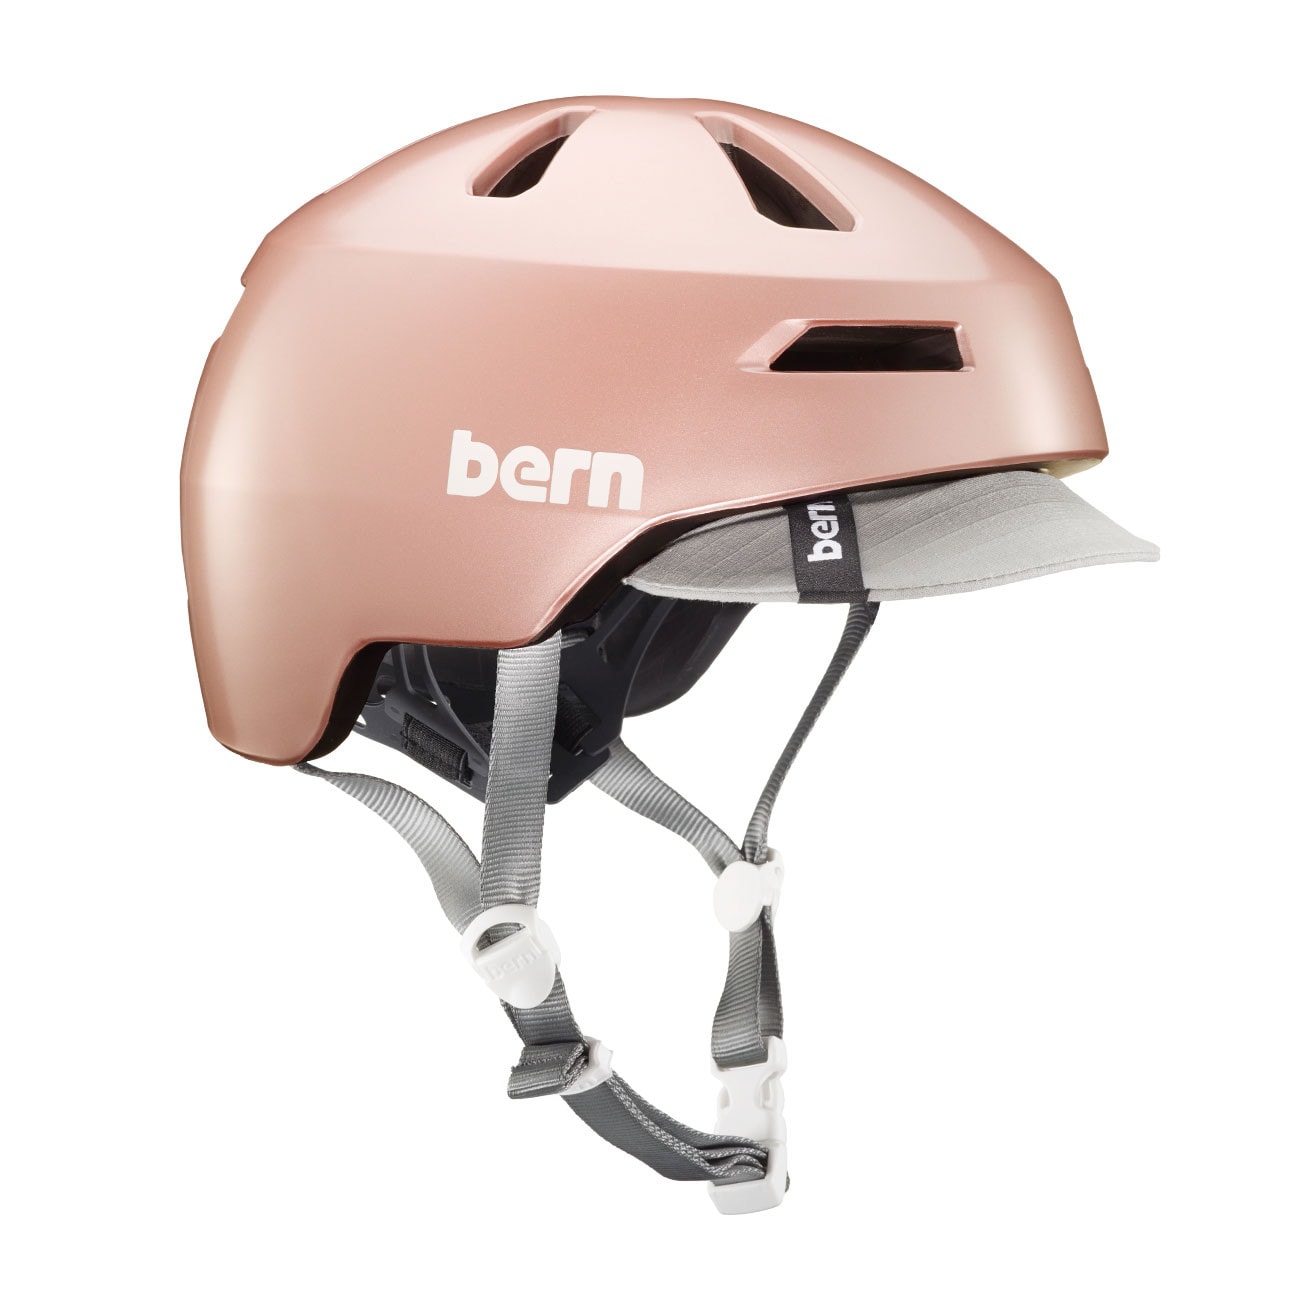 rose gold cycle helmet